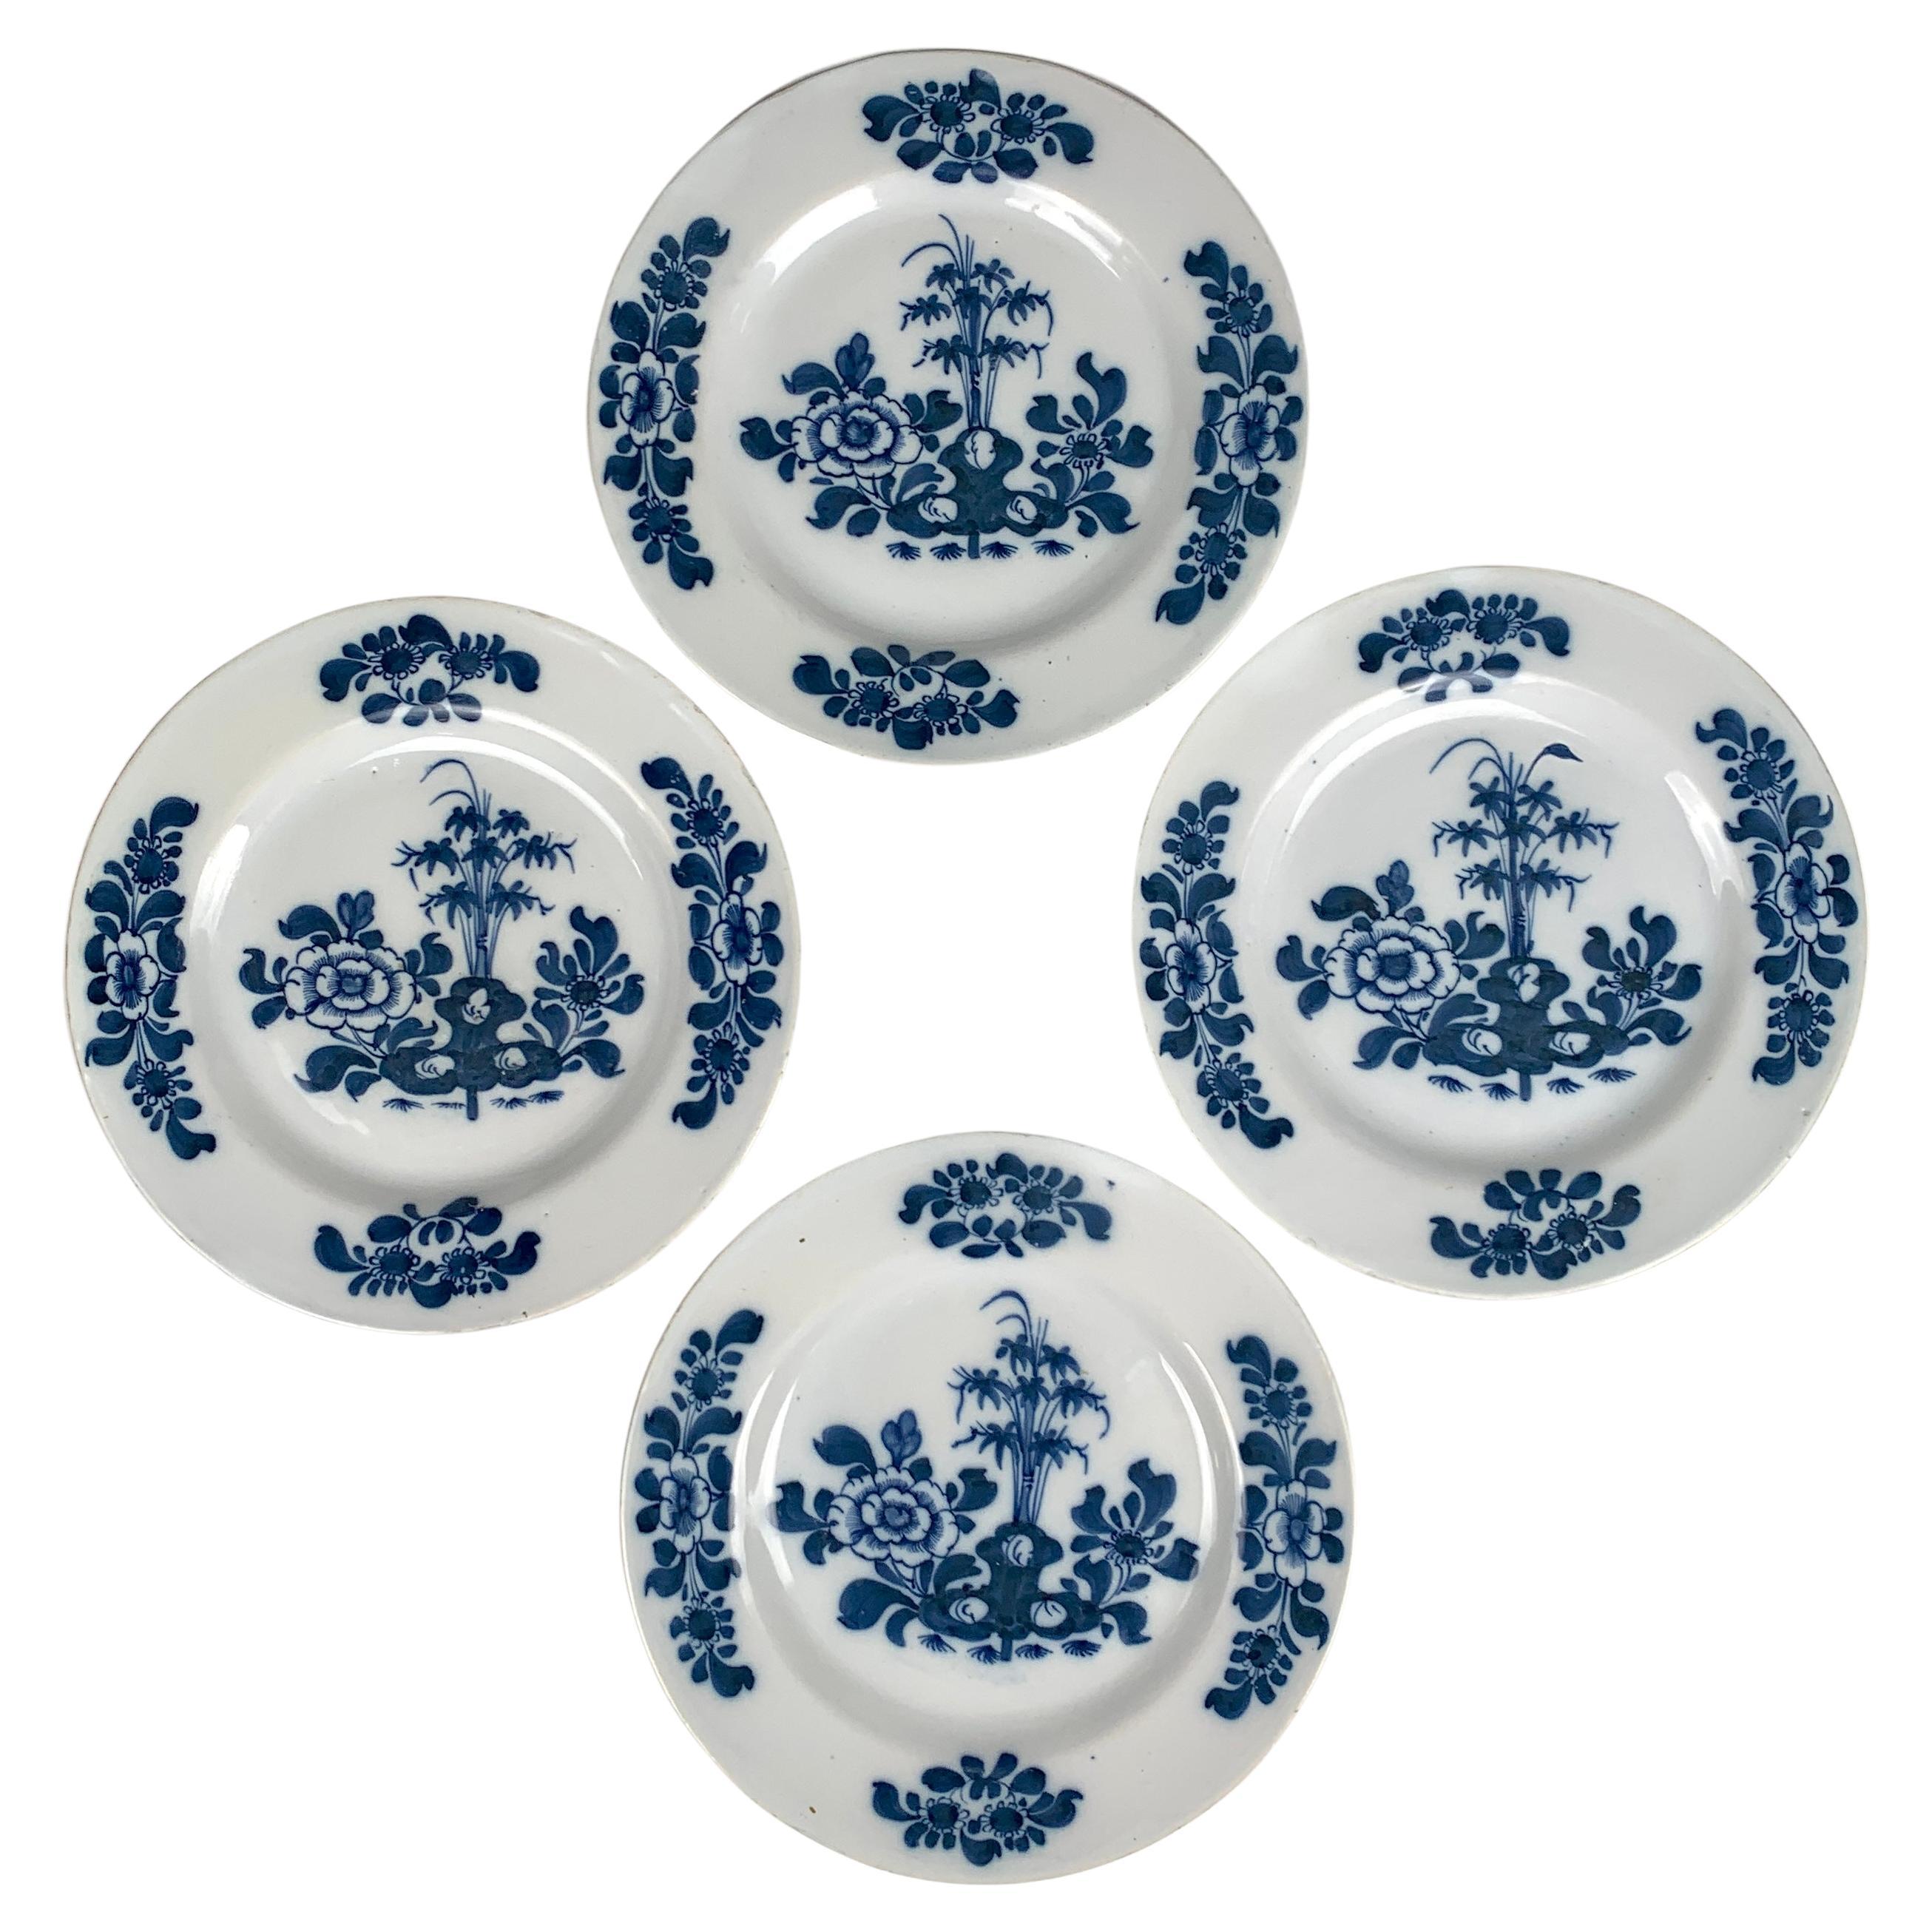 Satz von 4 blauen und weißen Delft Tellern oder Schüsseln Hand gemalt 18. Jahrhundert England